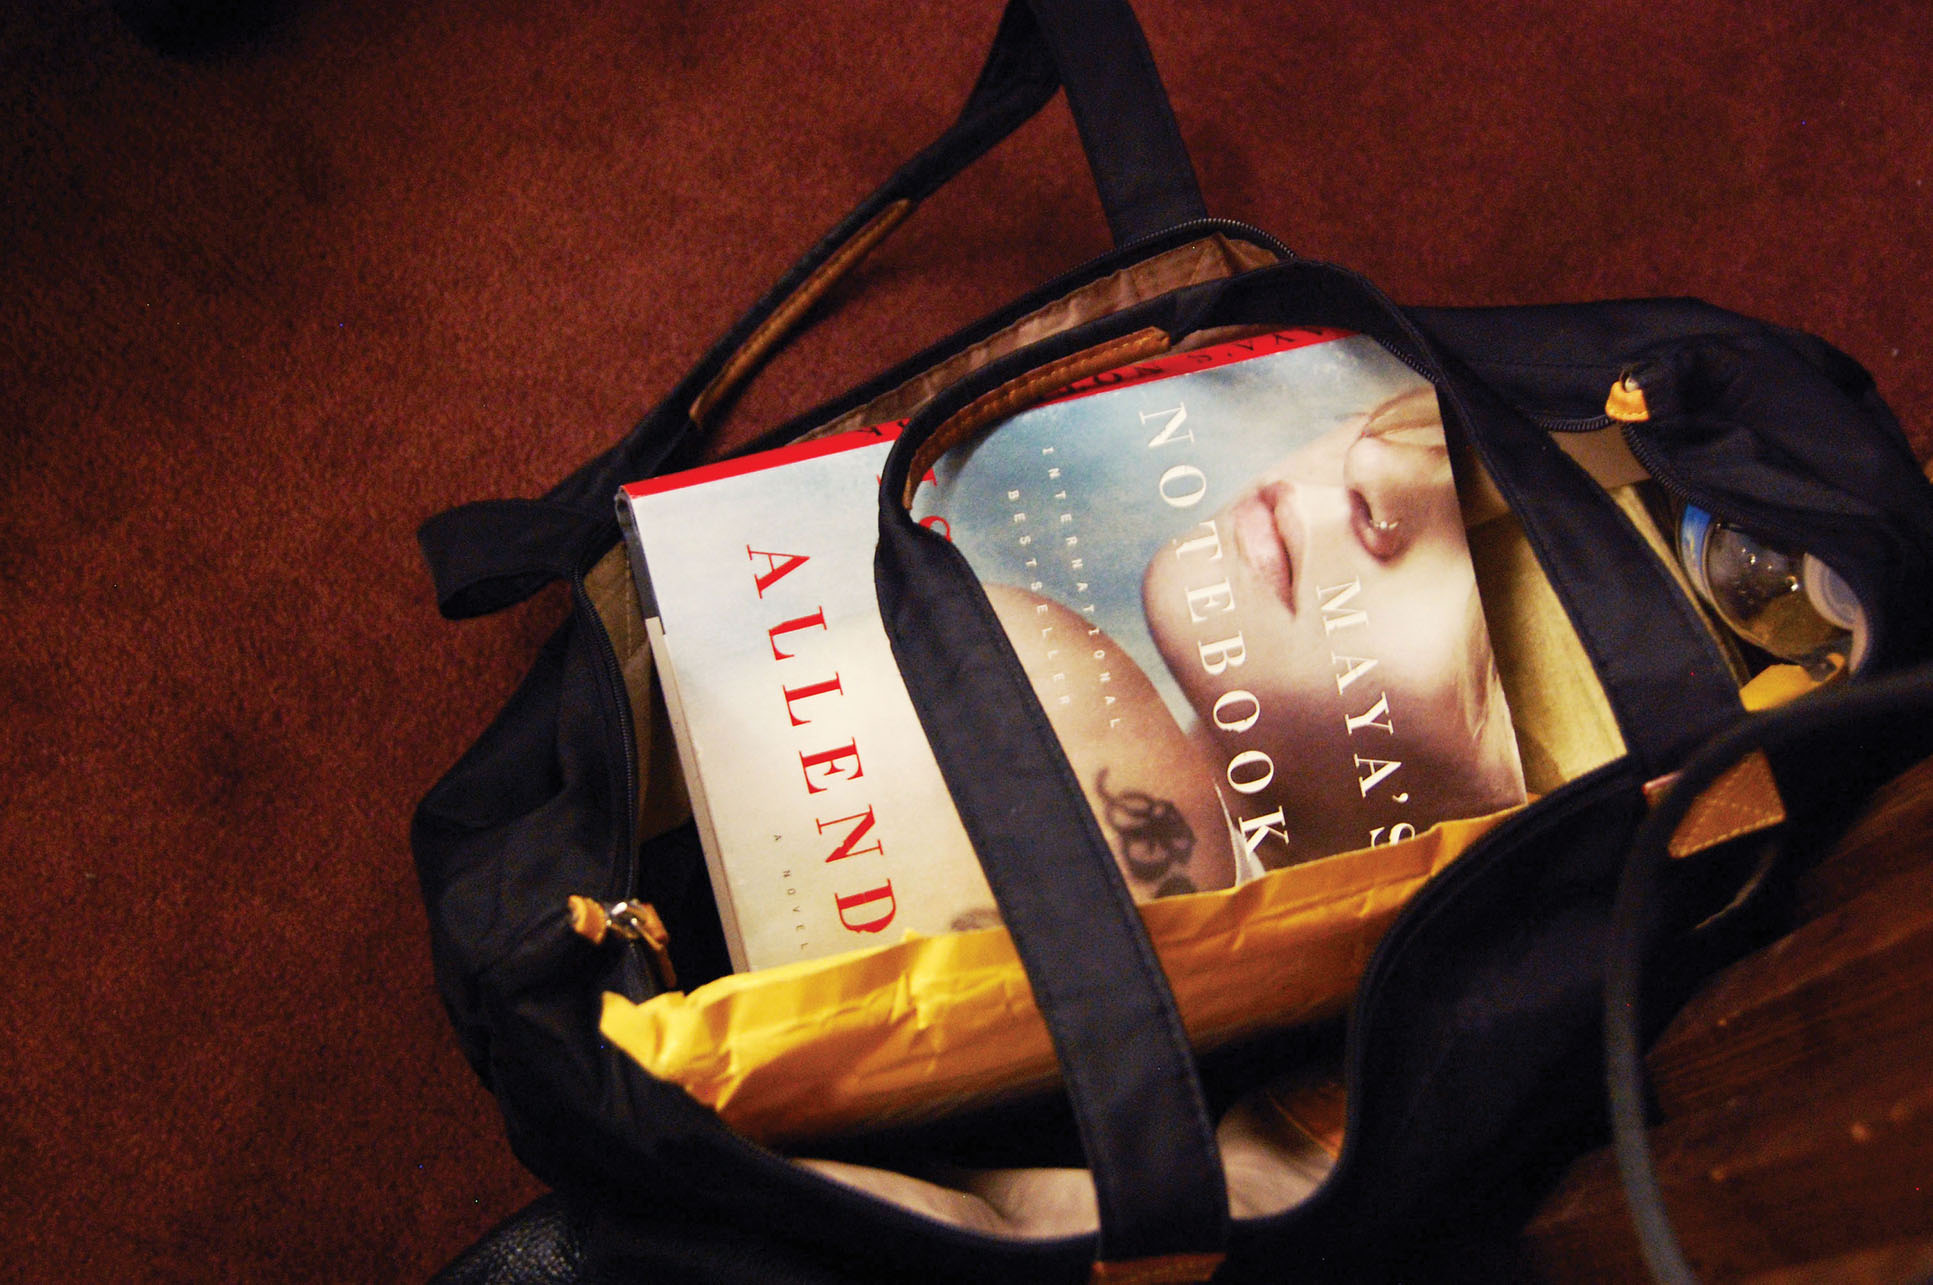 Isabel Allende's novel Maya's Notebook sits atop a carrying back at the talk. (Photo by Megan Kang.)